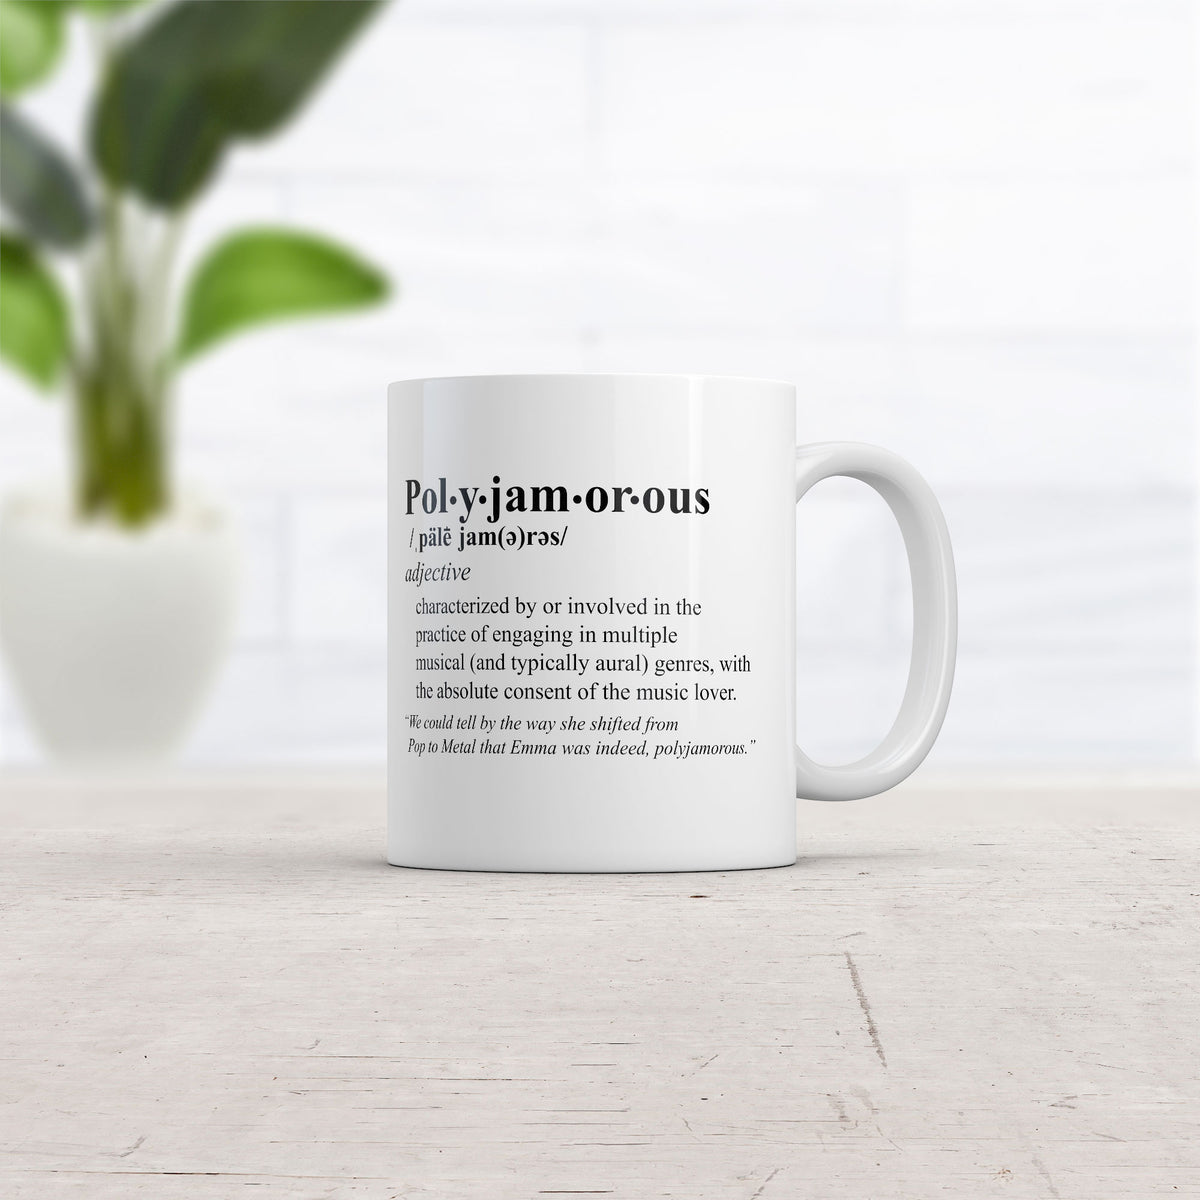 Polyjamorous Definition Mug